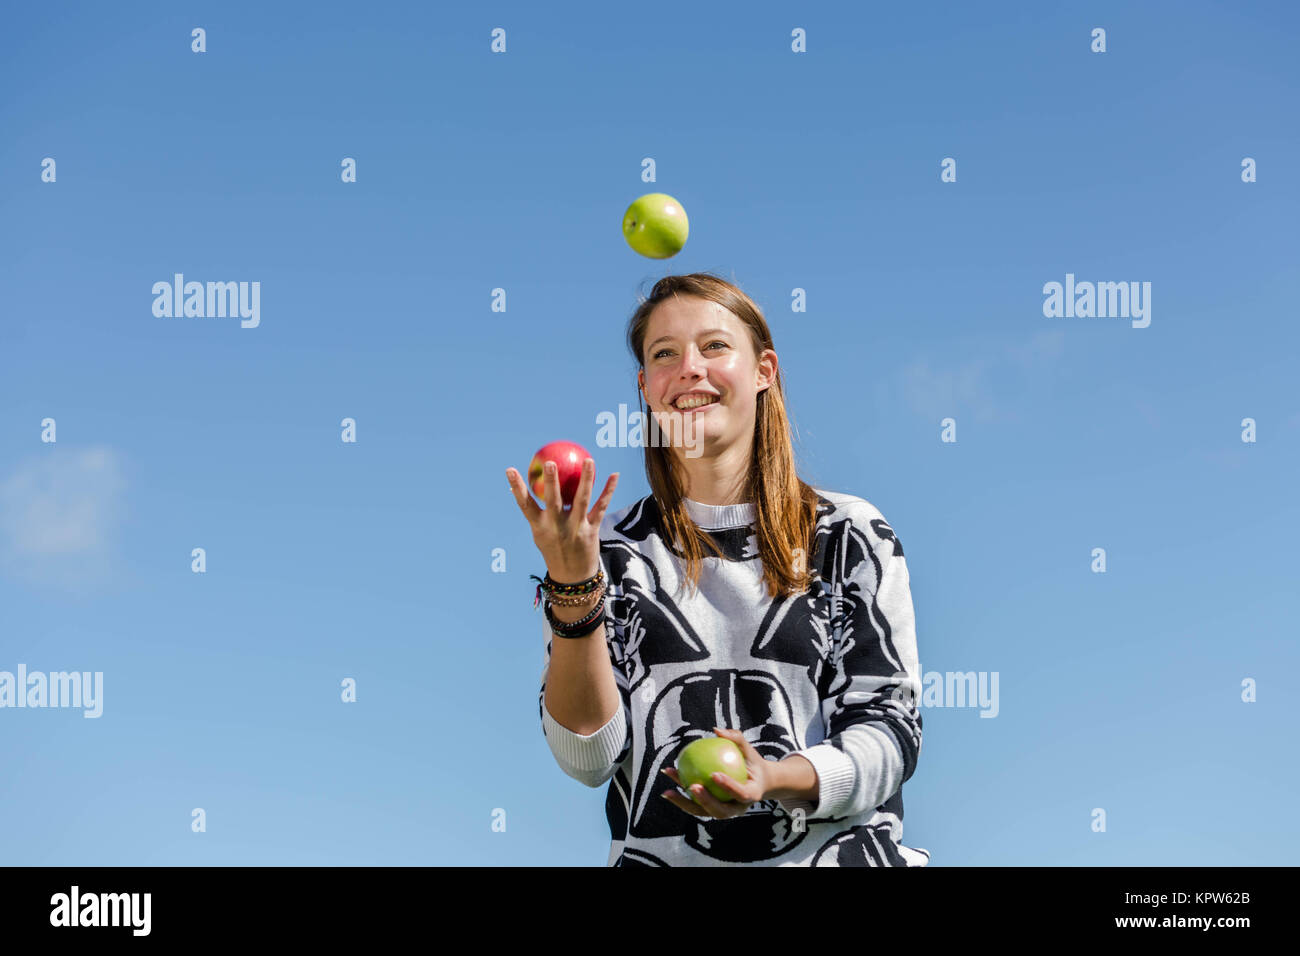 Eine junge Frau jongliert mit frischen und gesunden Äpfeln Foto Stock